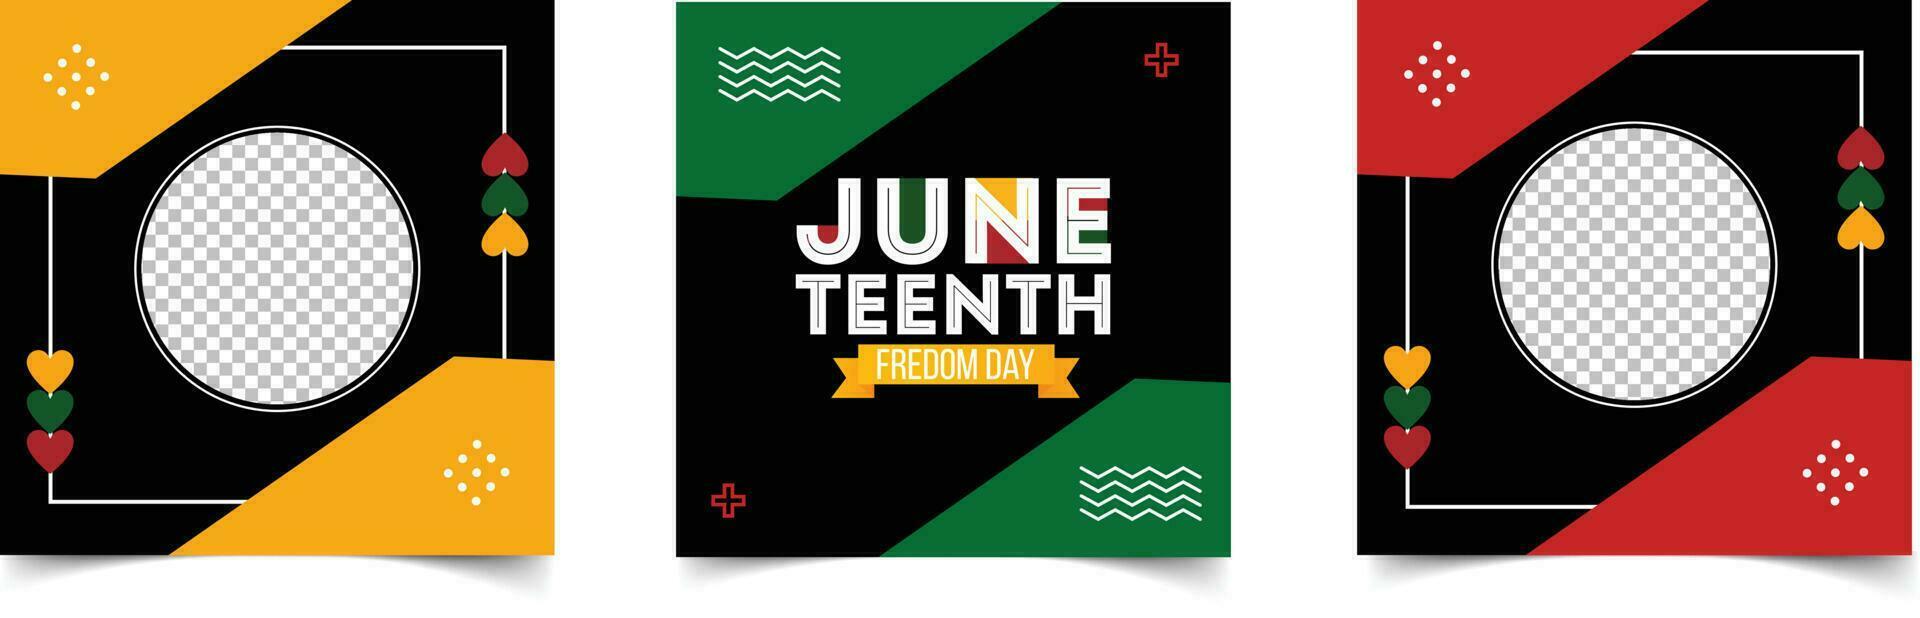 Sozial Medien Post Vorlage zum 19. Juni Tag, Feier Freiheit, Emanzipation Tag im 19 Juni, Afroamerikaner Geschichte und Erbe. vektor